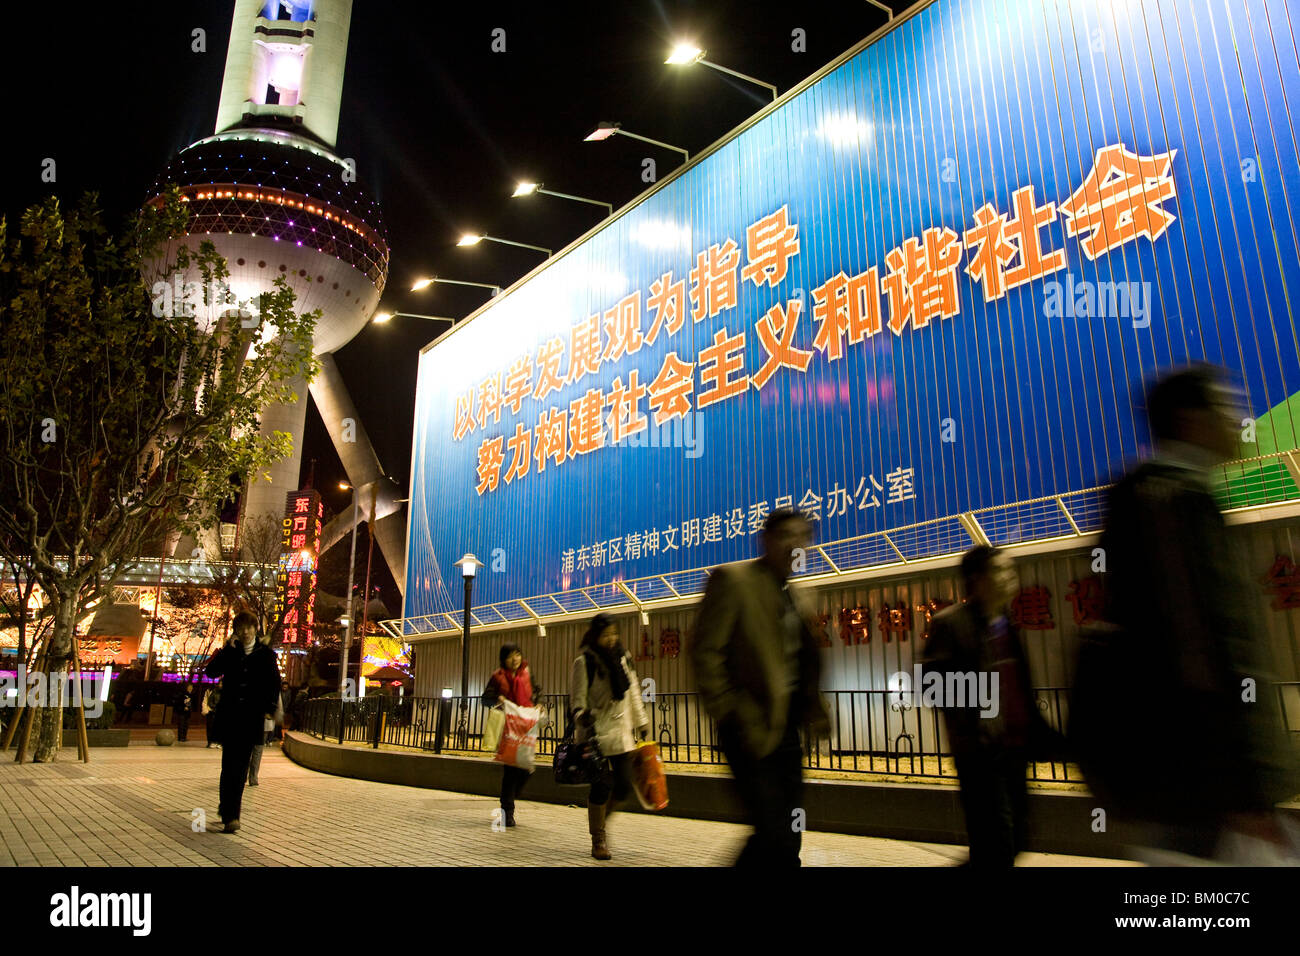 La gente en frente de la Oriental Pearl Tower en la noche, la EXPO 2010 Shanghai Pudong, Shanghai, China, Asia Foto de stock